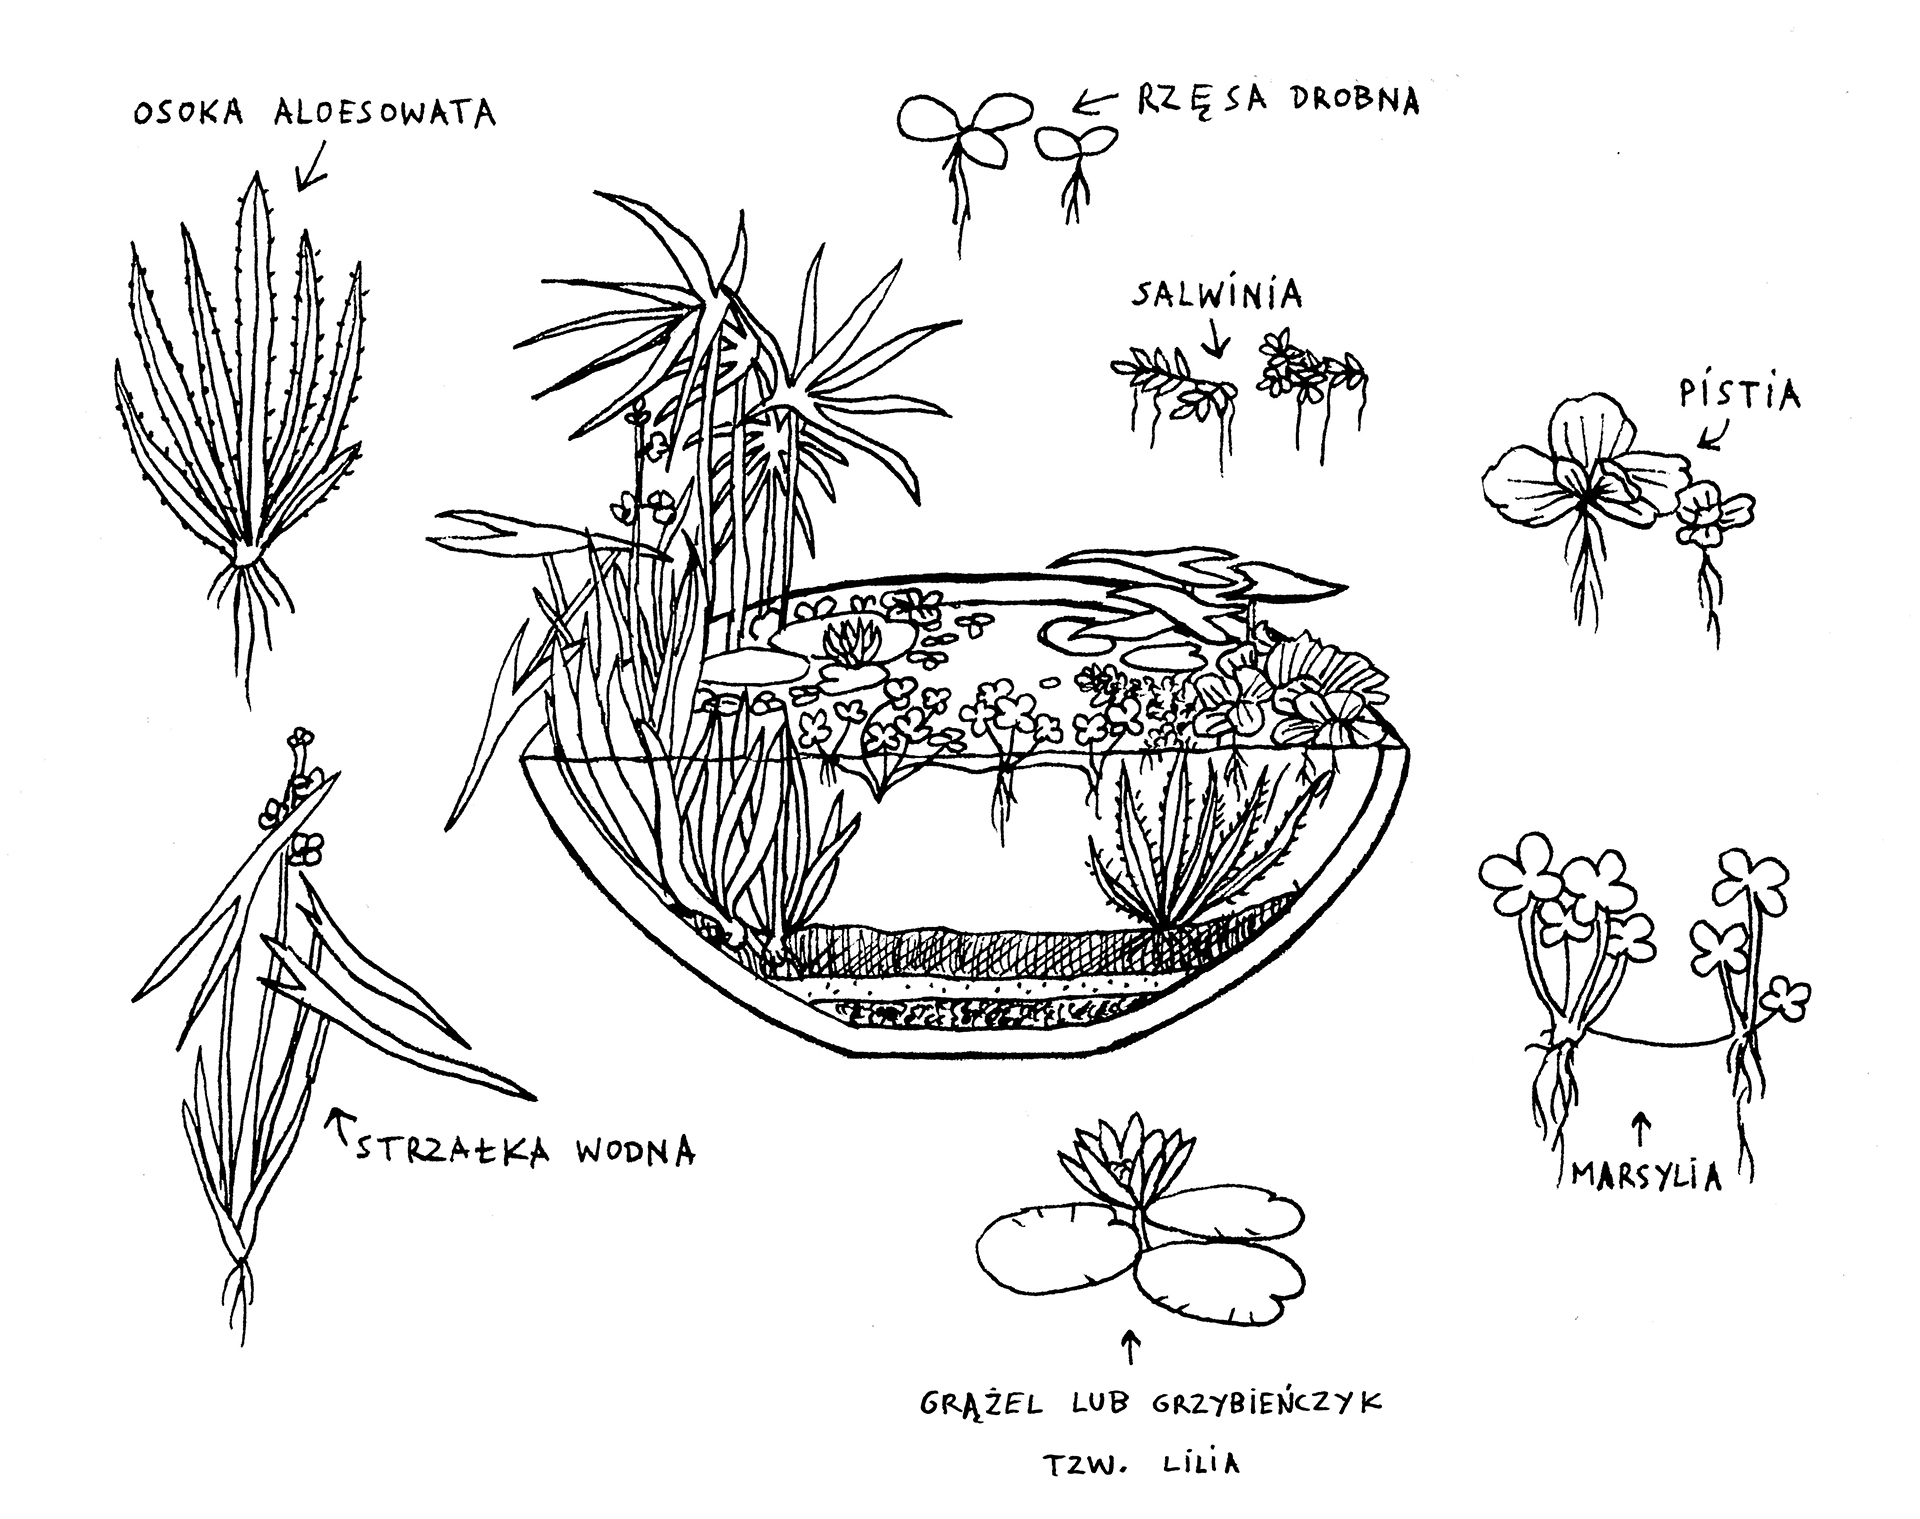 Przekrój donicy hydrobotanicznej wraz z opisami znajdującymi się w niej roślin wodnych, takich jak marsylia, grążel lub grzybieńczyk (tzw. lilia), strzałka wodna, osoka aloesowata, rzęsa drobna, salwinia i pistia